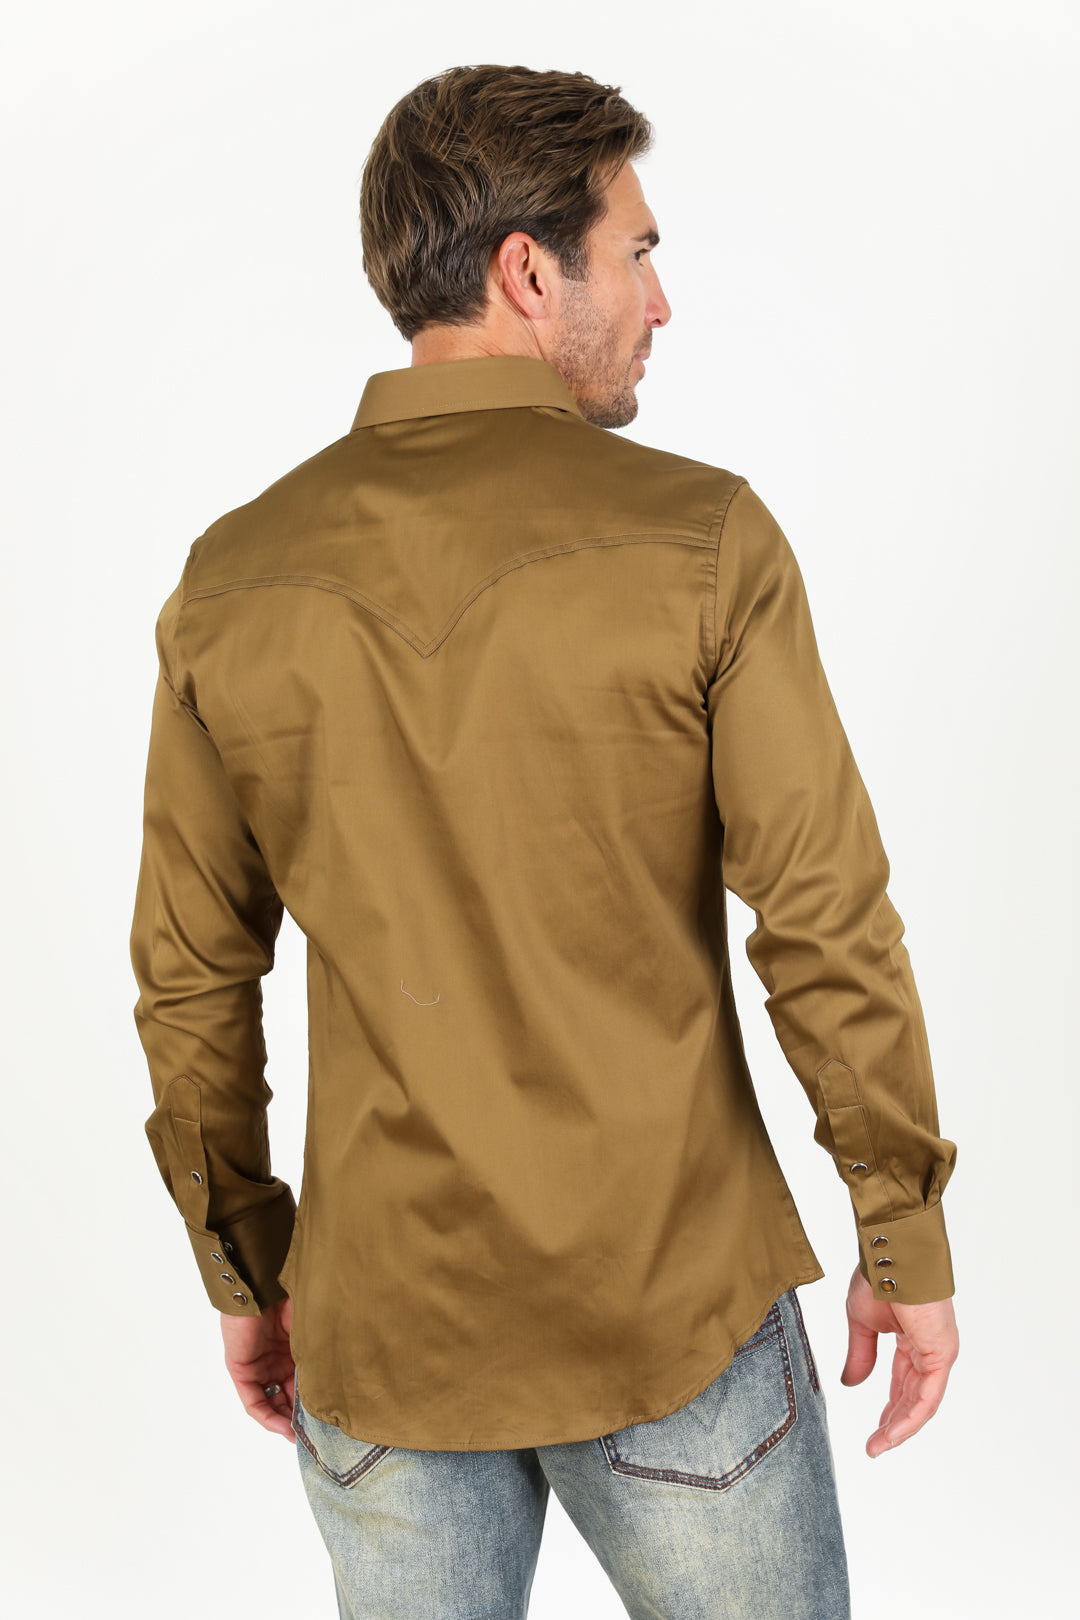 Men's Modern Fit Light Brown Dress Shirt